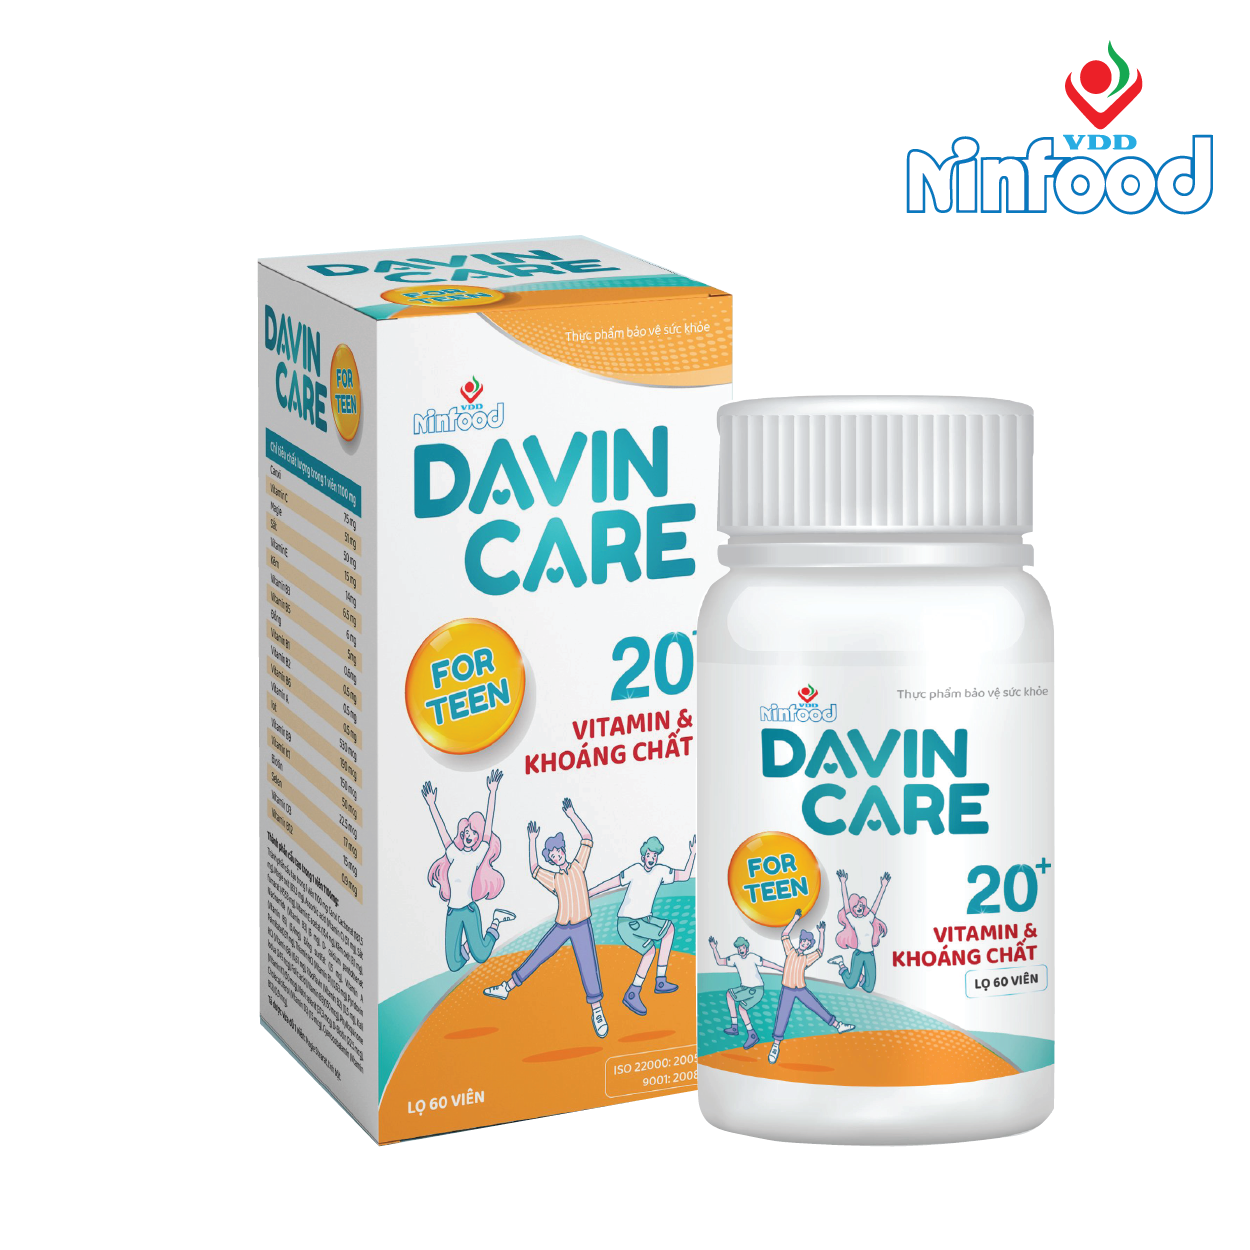 Davin Care for Teen - Viên uống vitamin và khoáng chất cho thanh thiếu niên - Viện dinh dưỡng Quốc gia - Ninfood